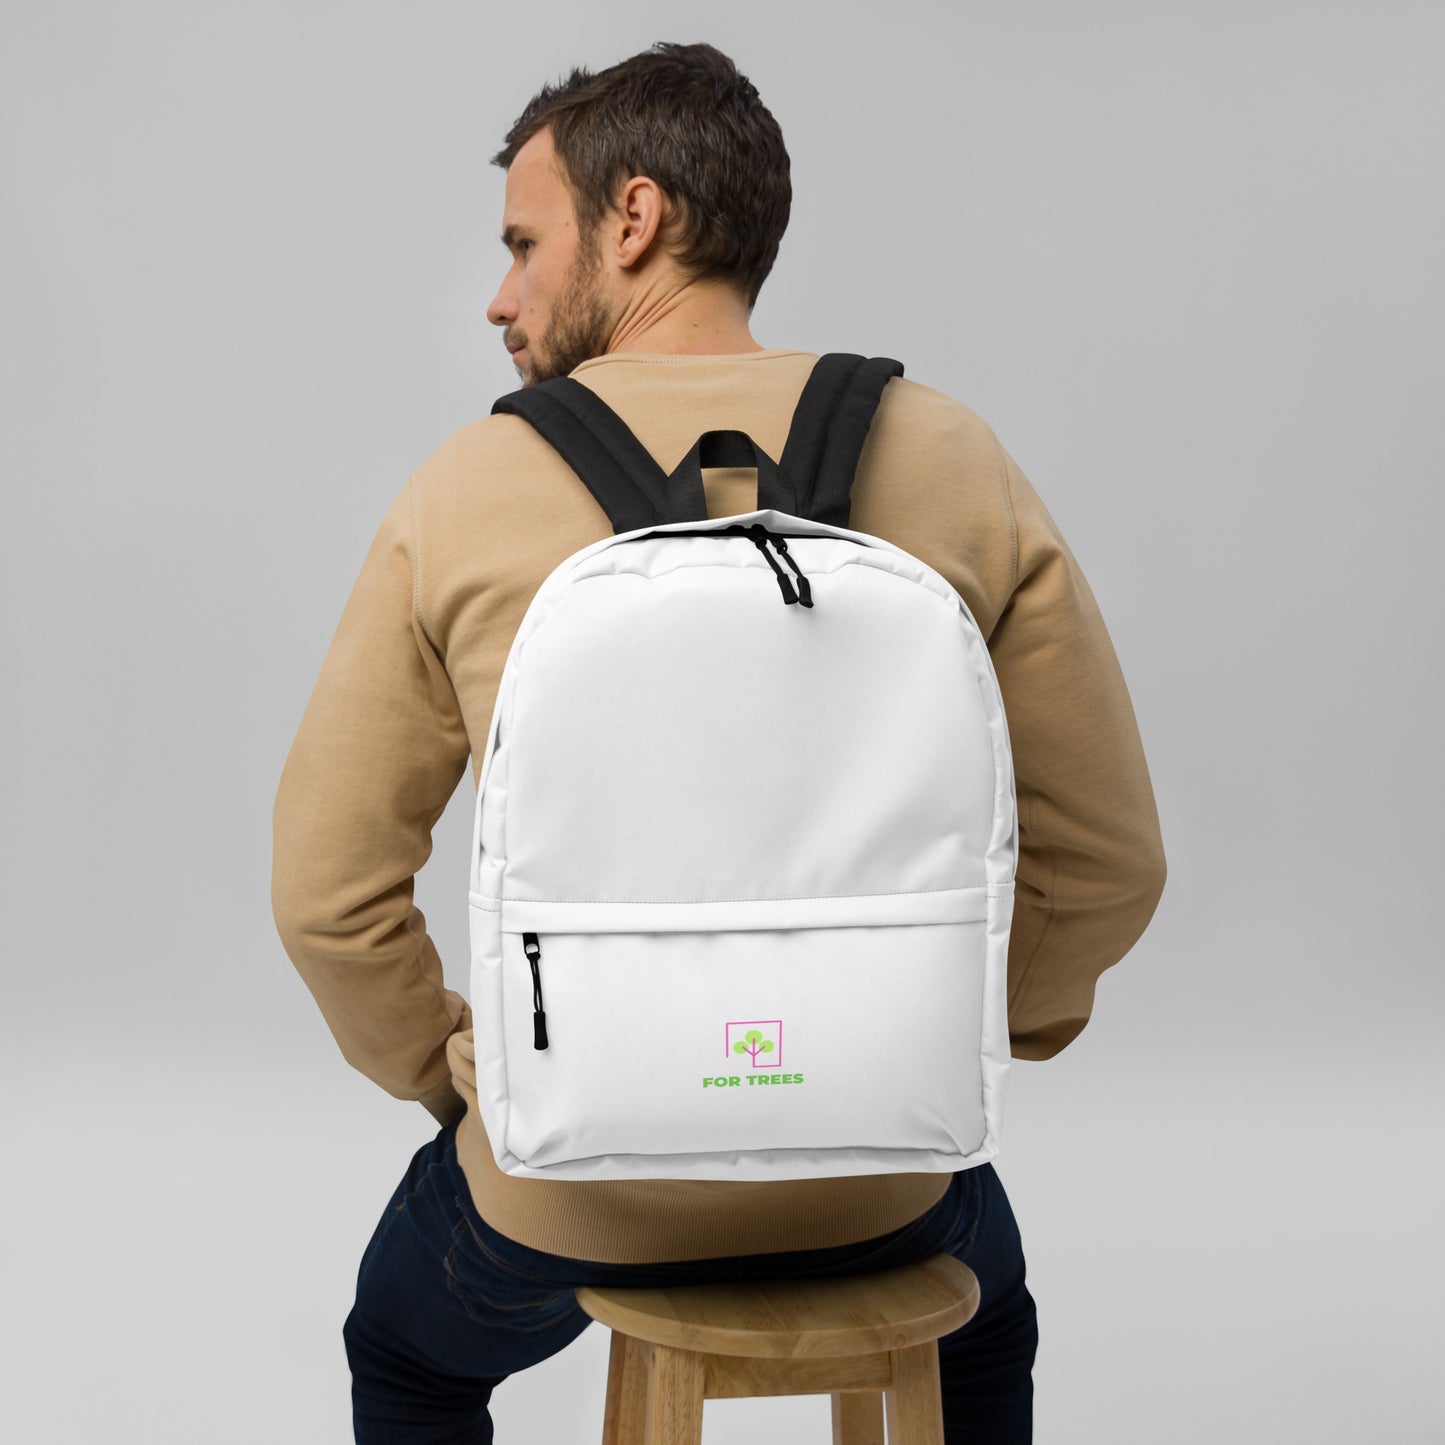 VersaPack Everyday Backpack